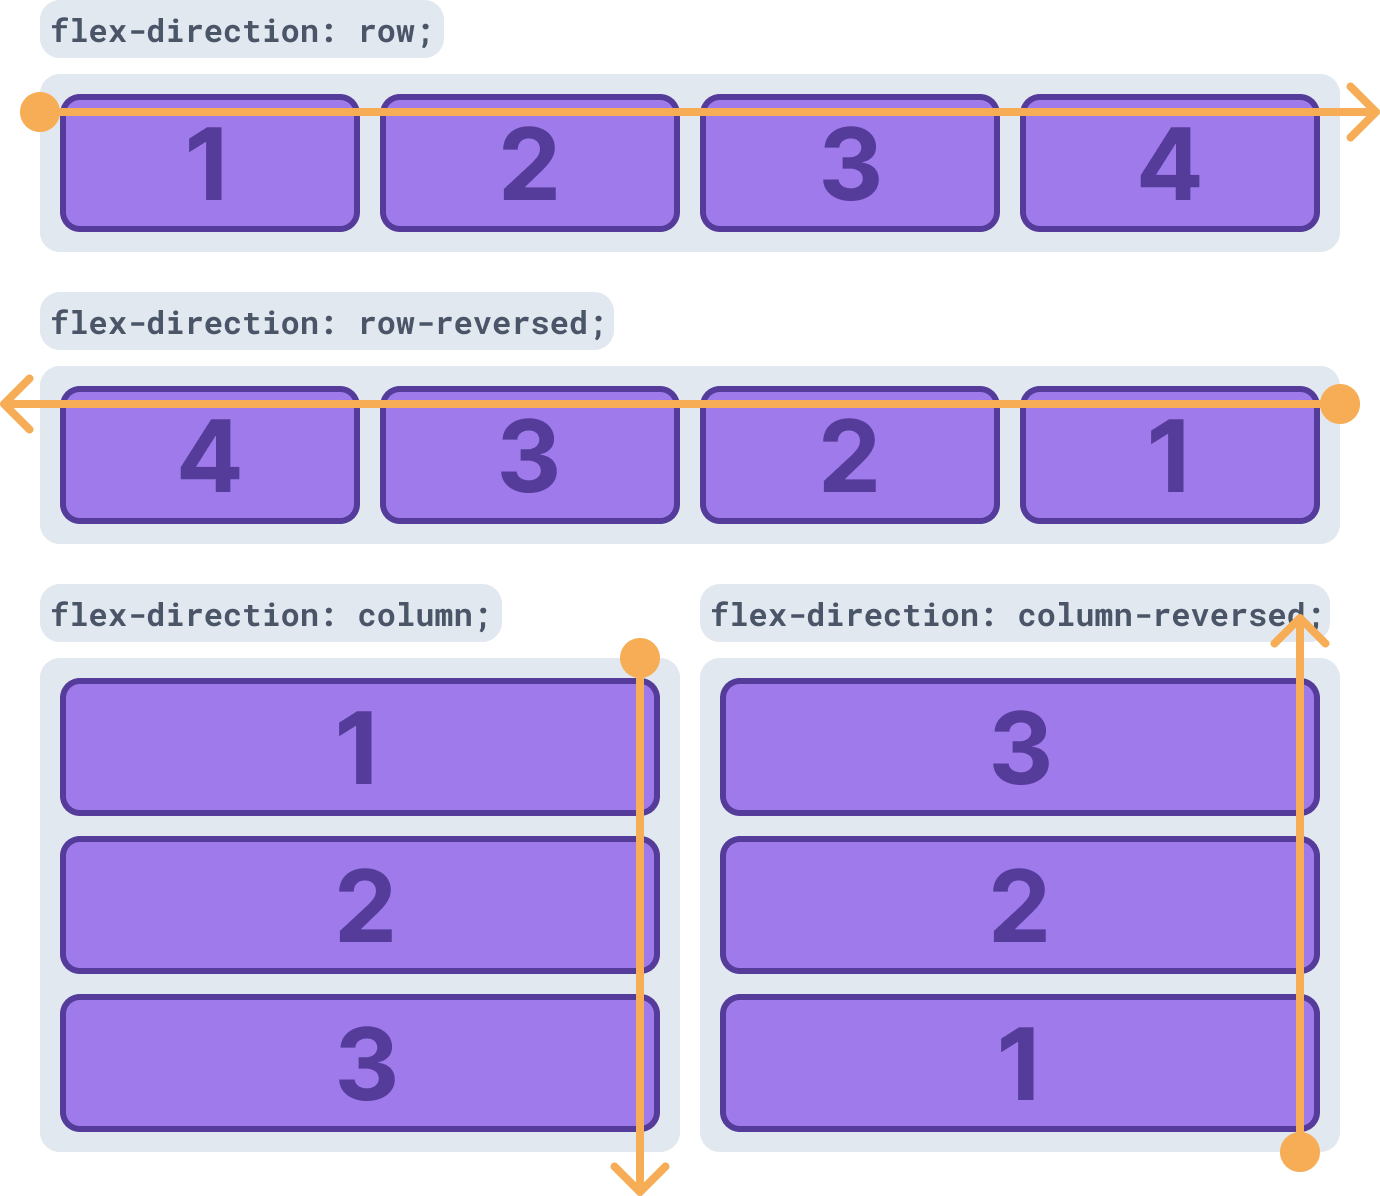 flex-direction com valores row, row-reversed, column e column-reversed